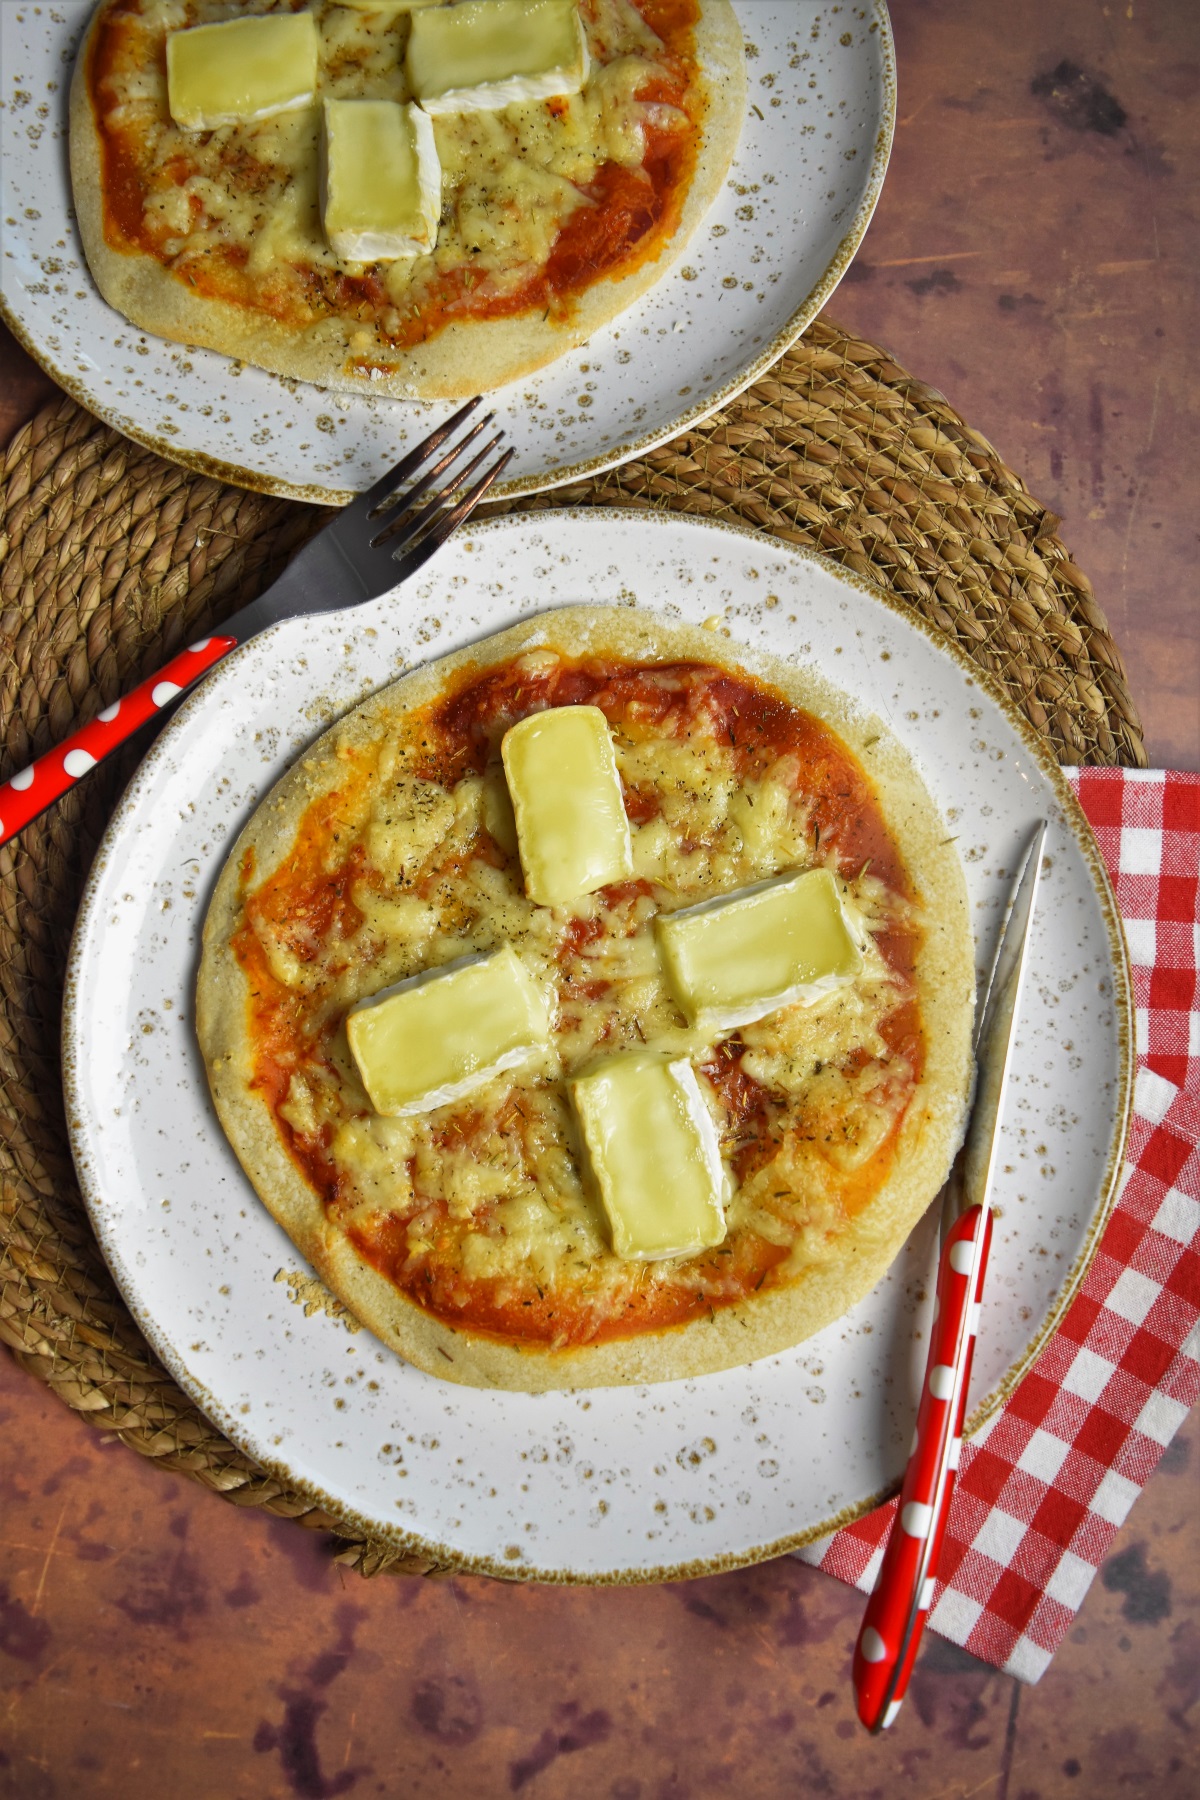 INFORMATIONS IMPORTANTES SUR LA CUISSON DE PIZZAS AVEC UNE PIERRE A PIZZA